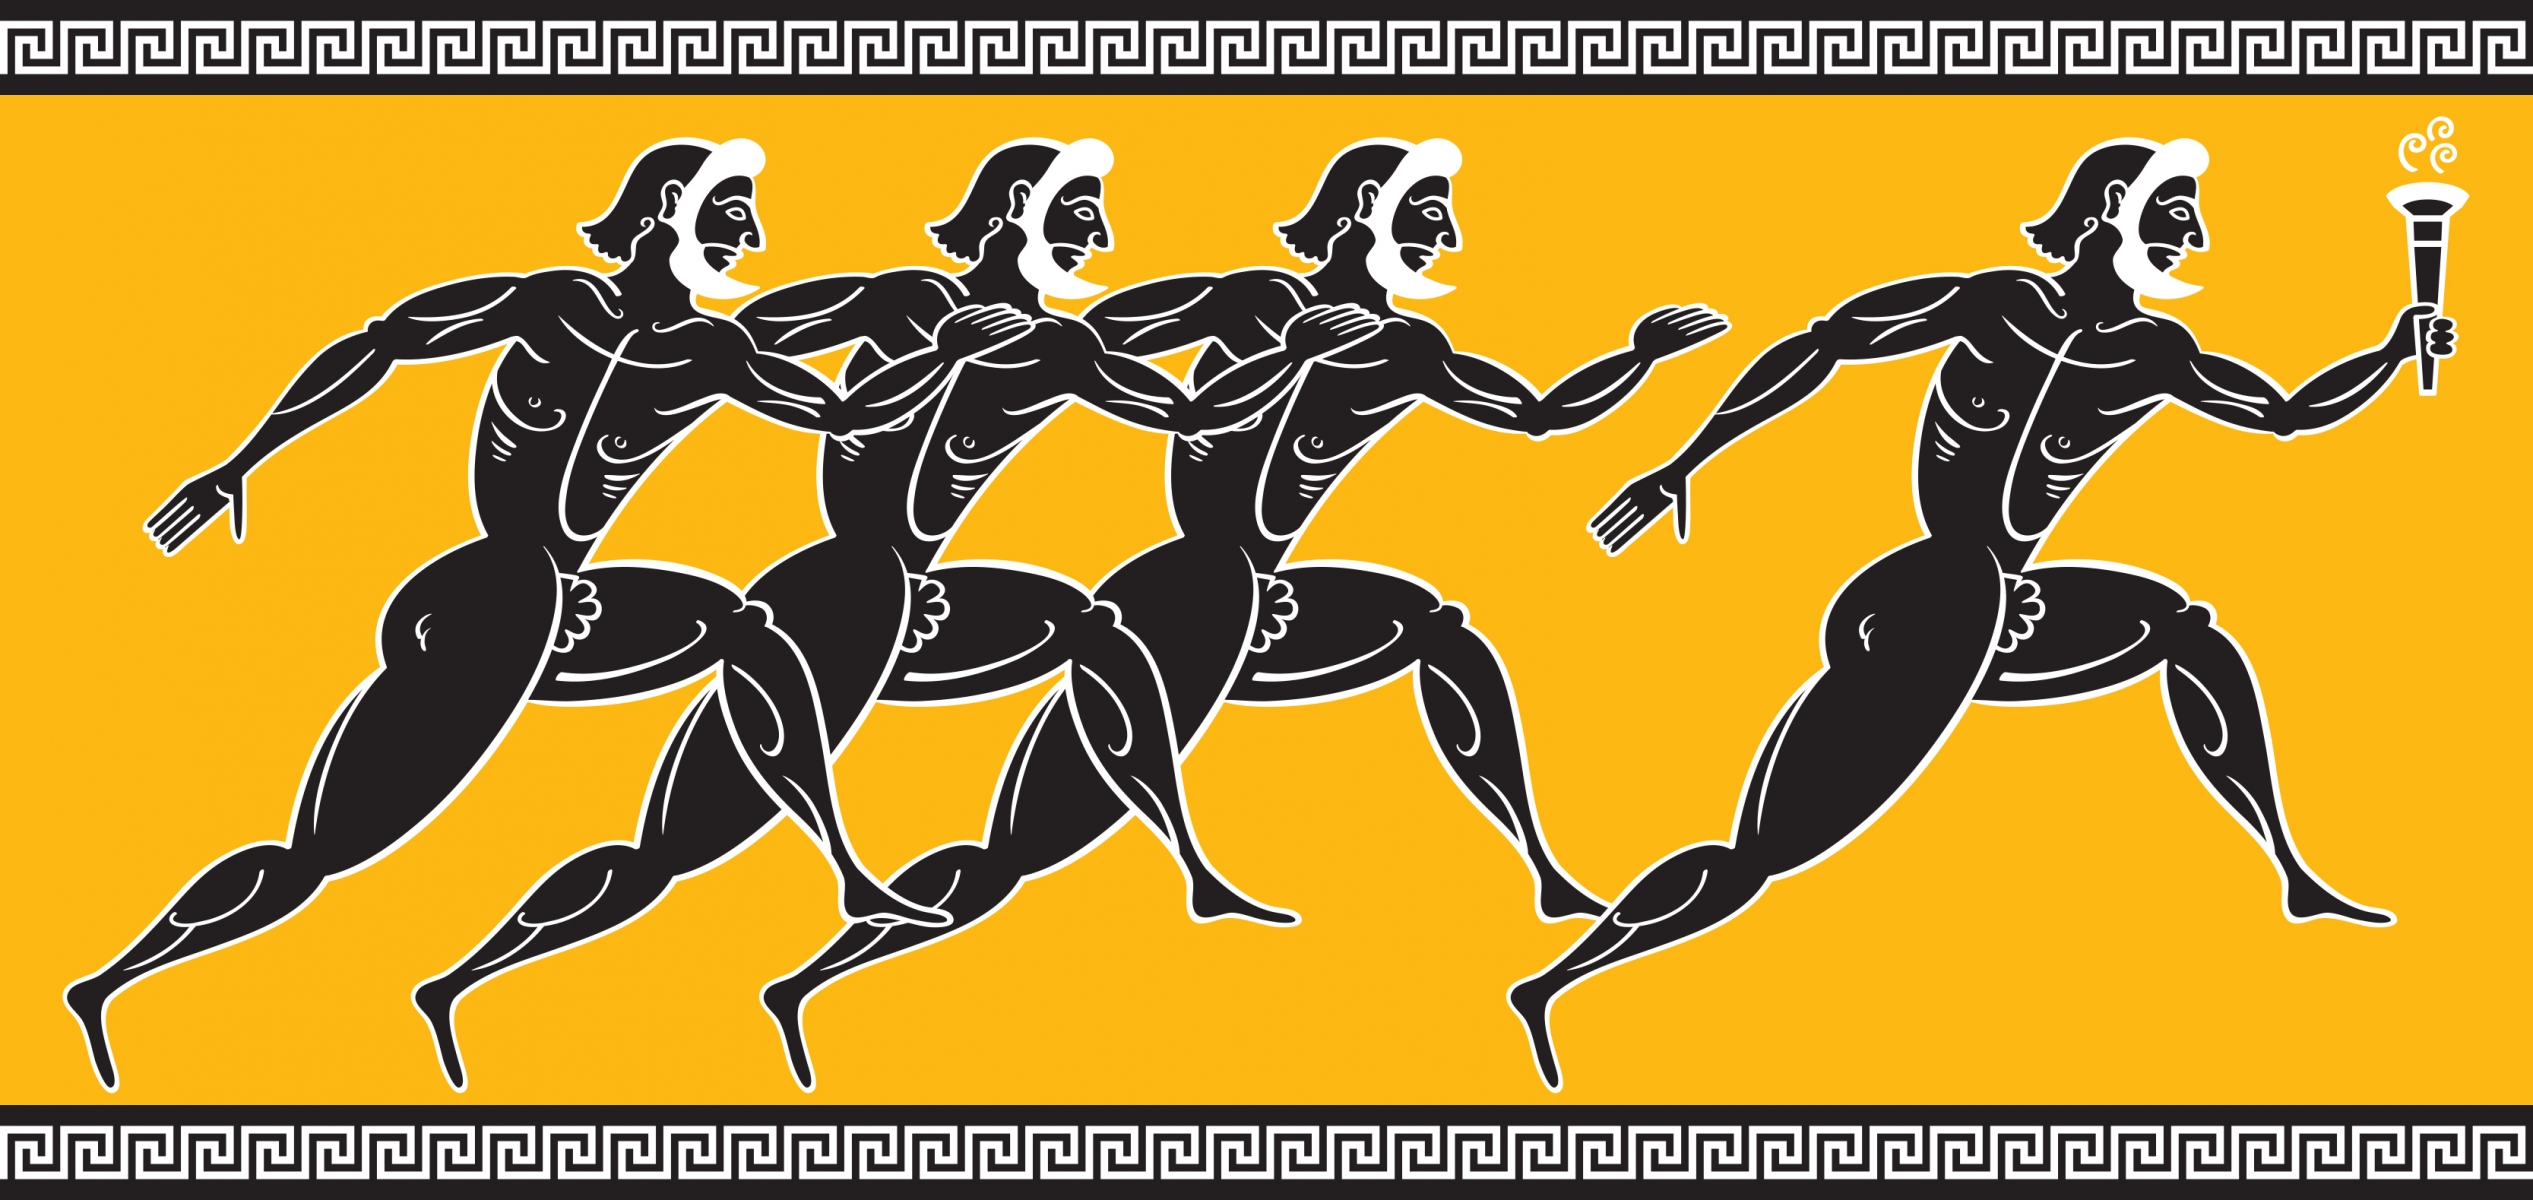 Олимпийские бегуны древней Греции